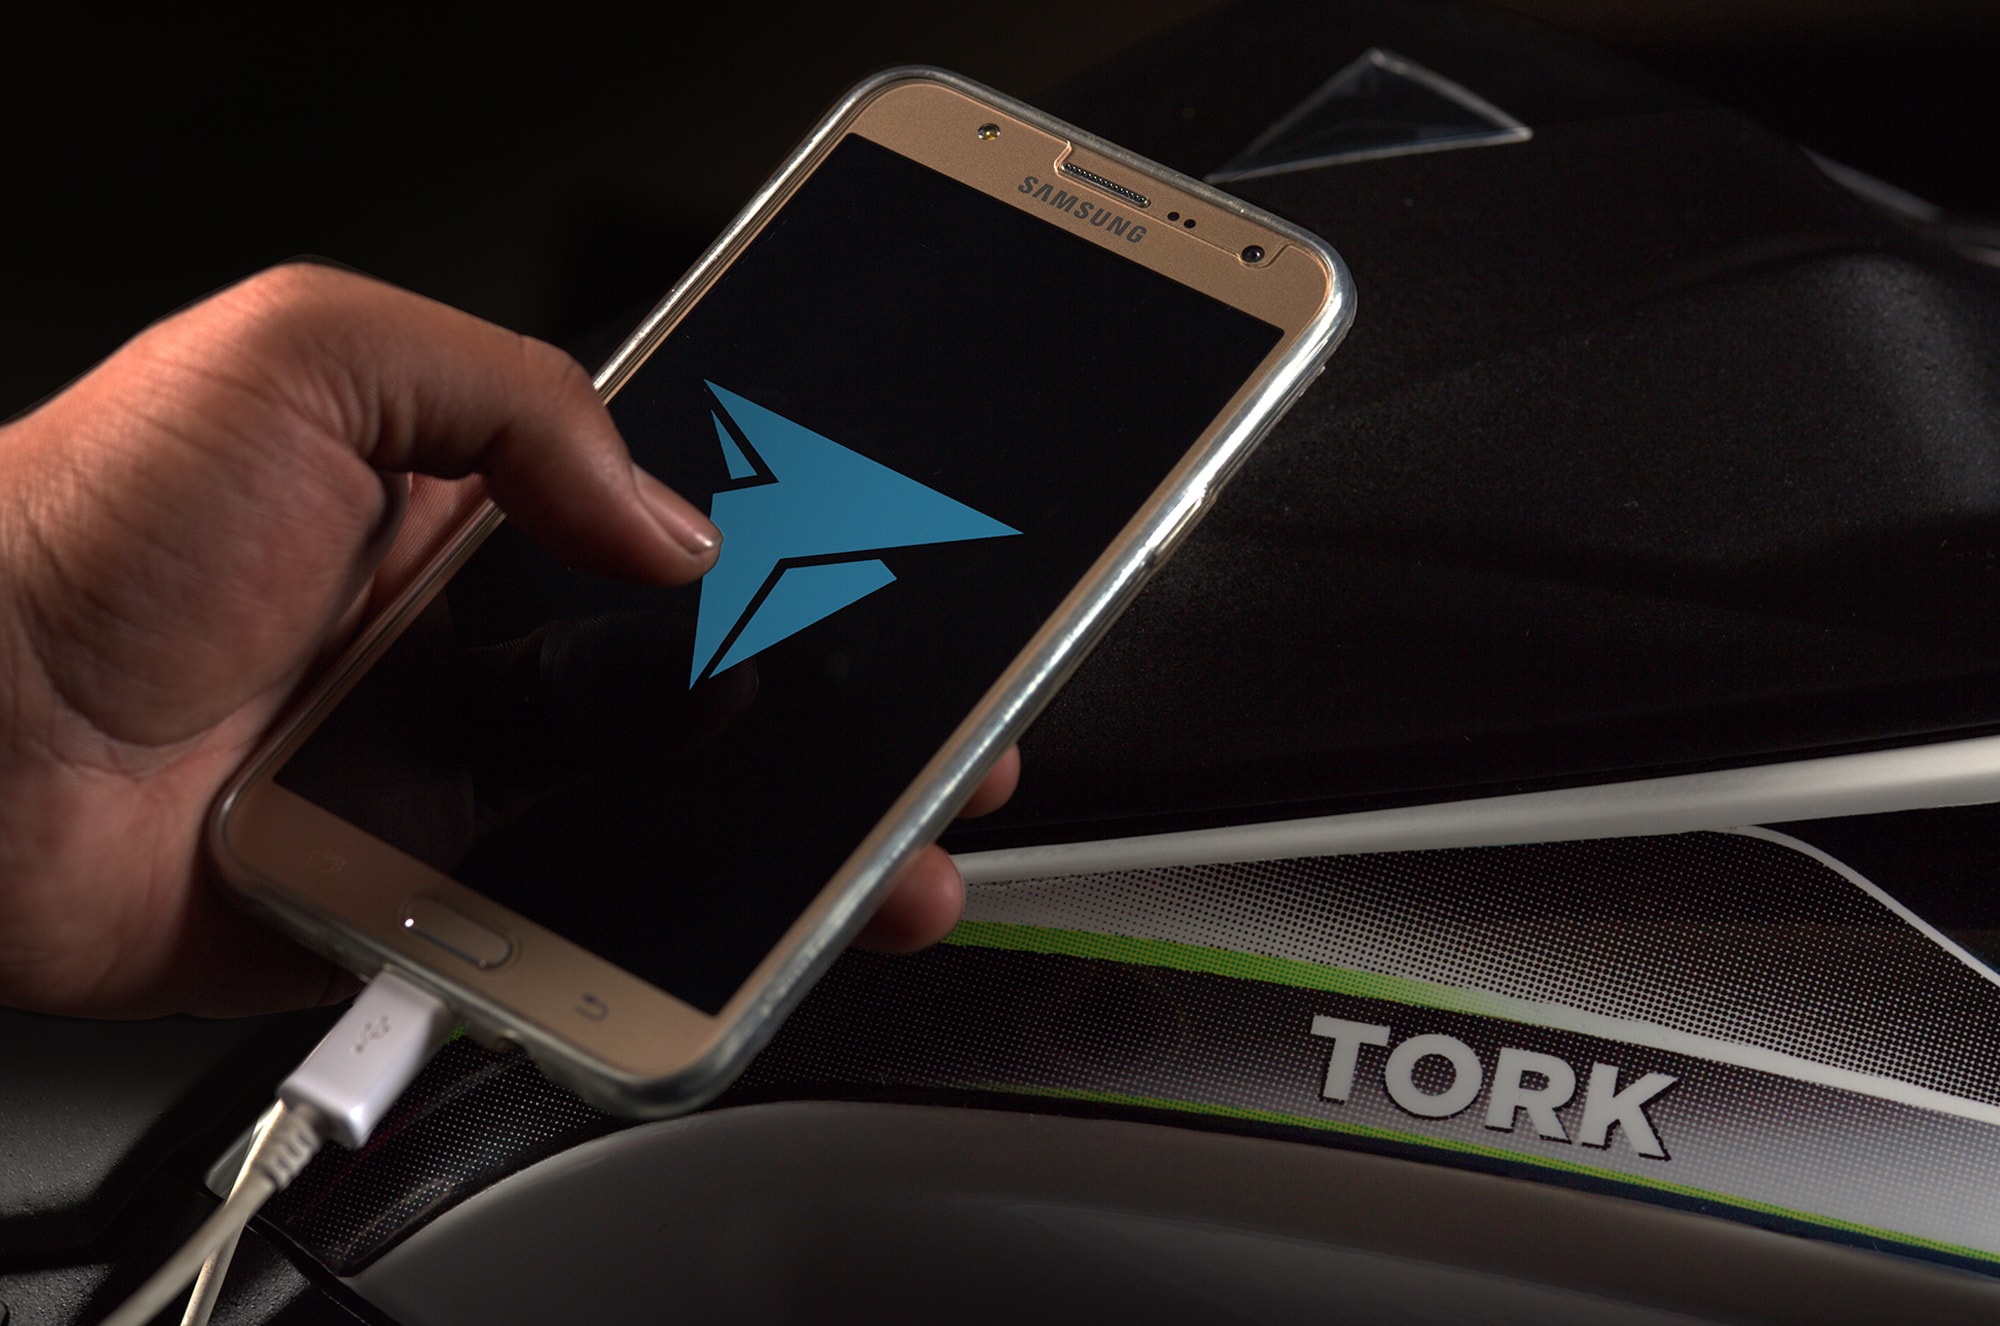 tork-t6x-mobile-app